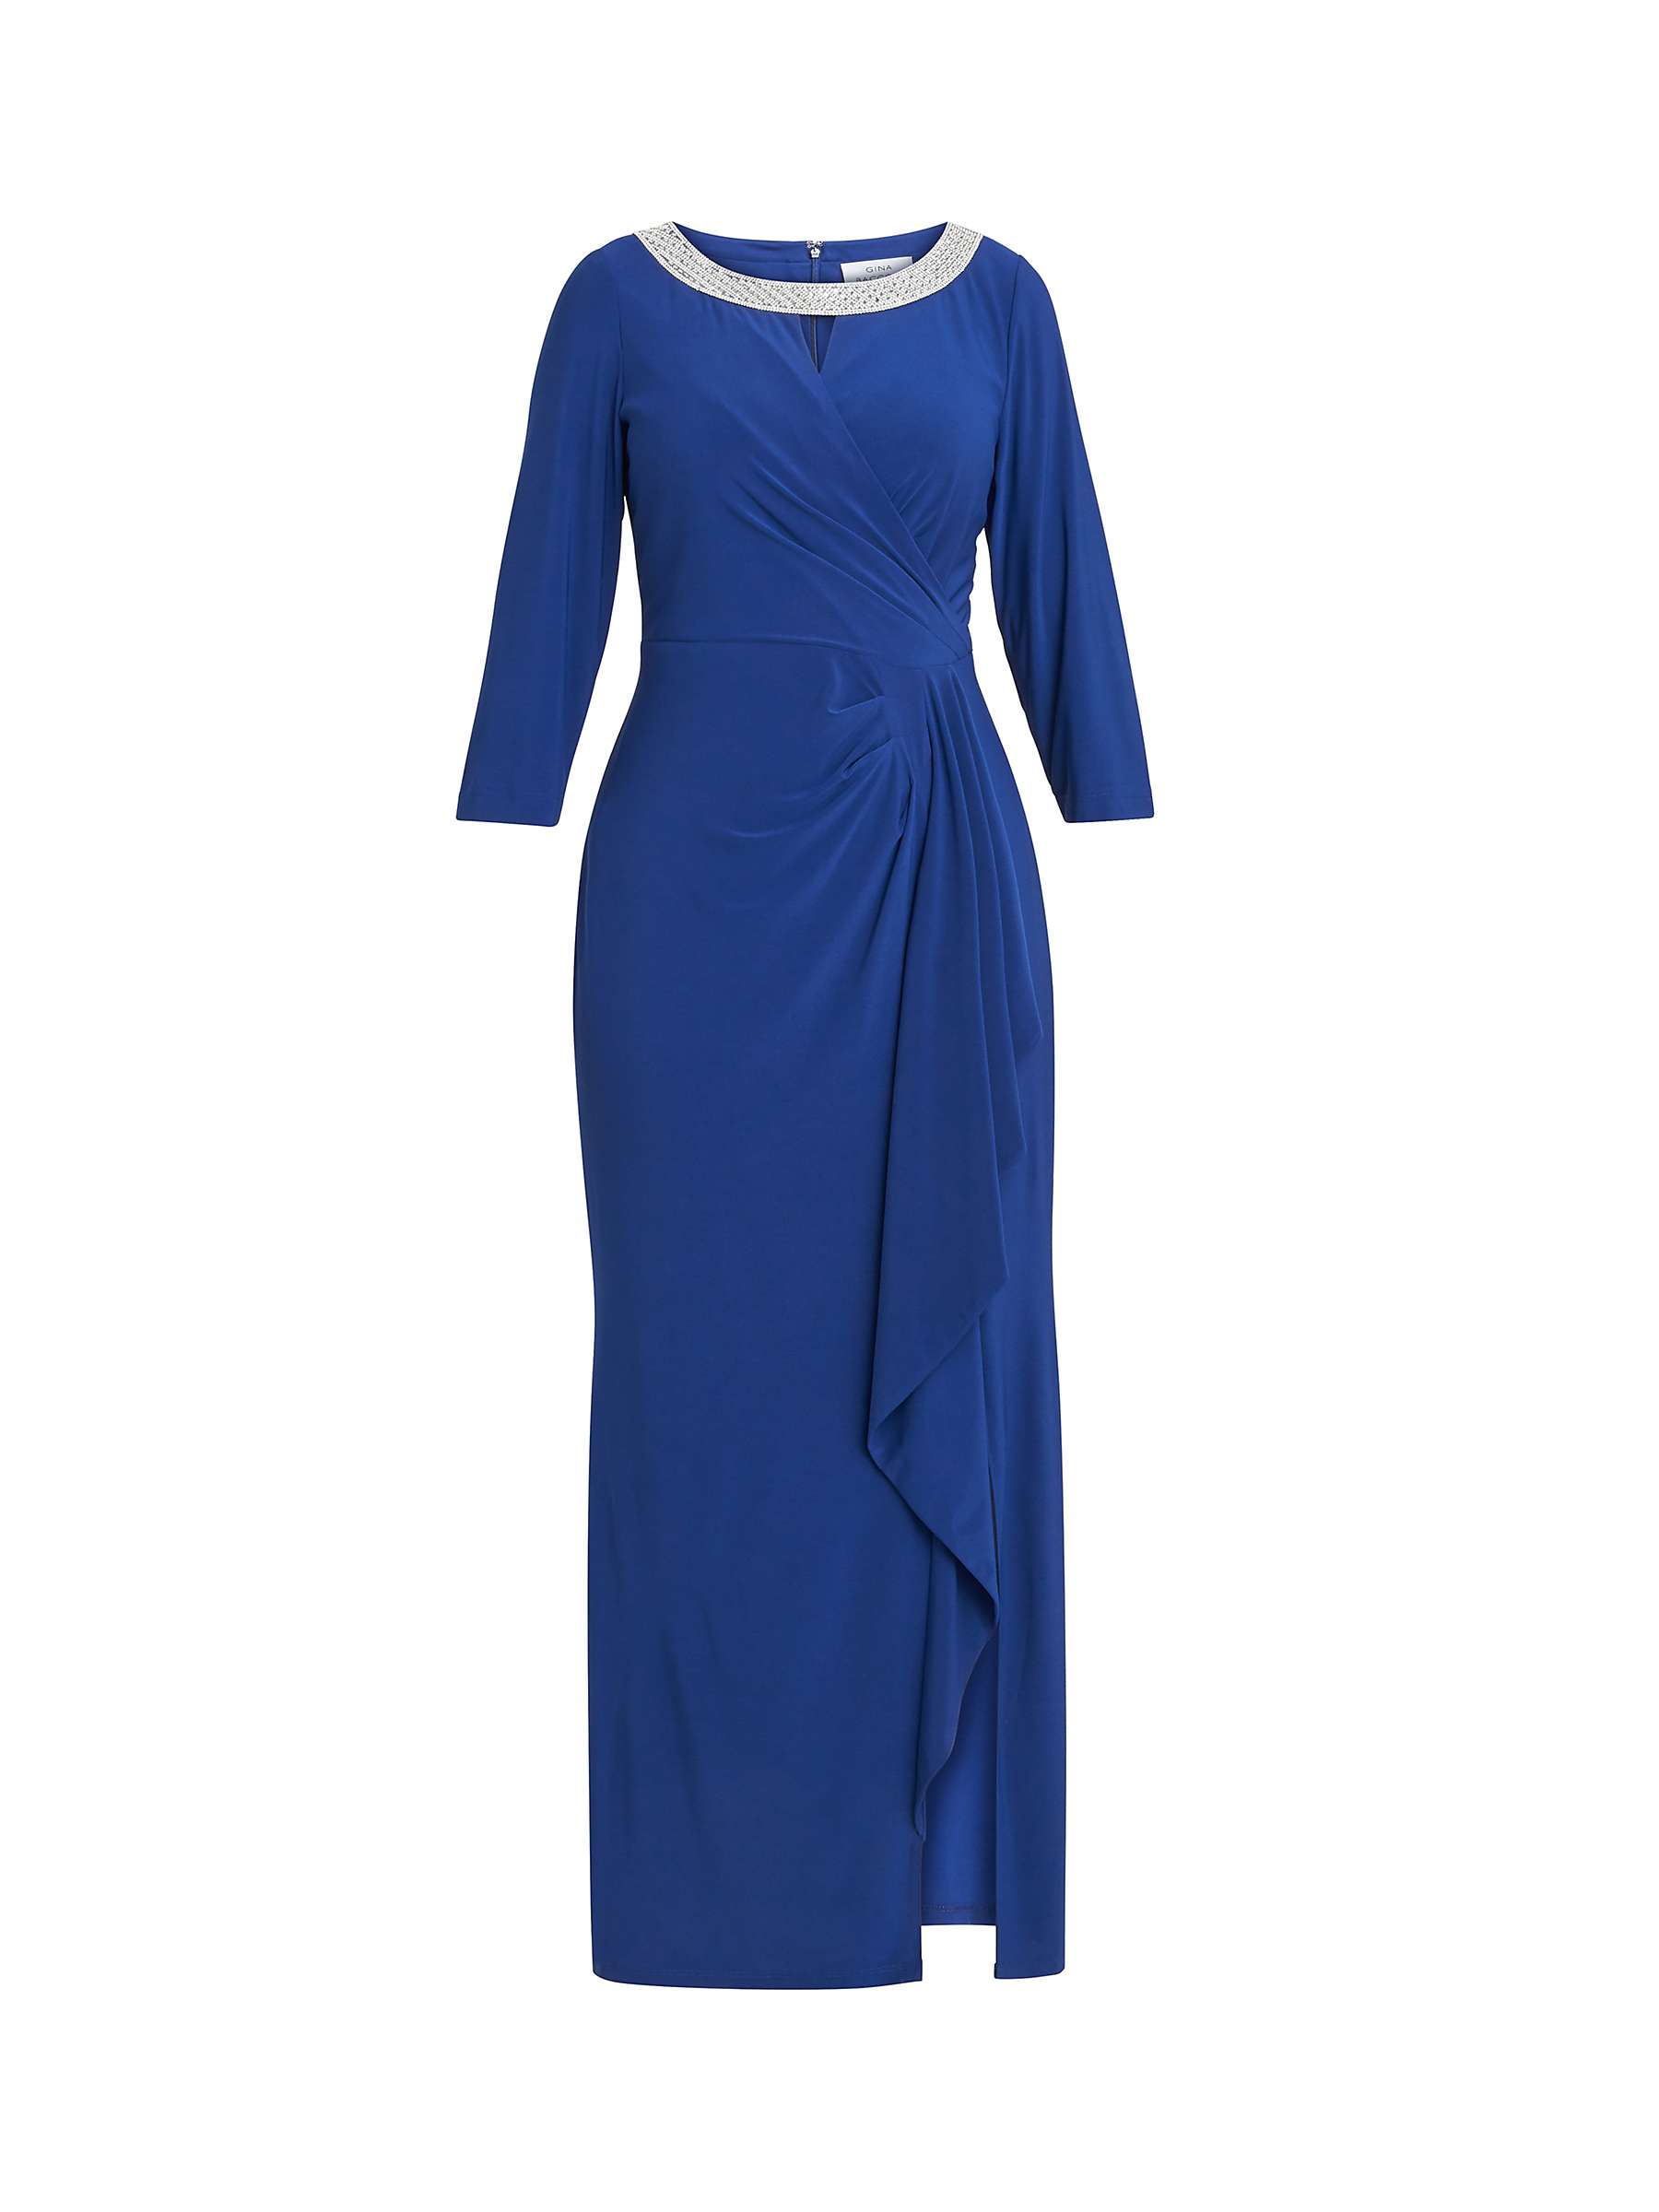 Buy Gina Bacconi Delilah Embellished A-Line Maxi Dress, Royal Online at johnlewis.com